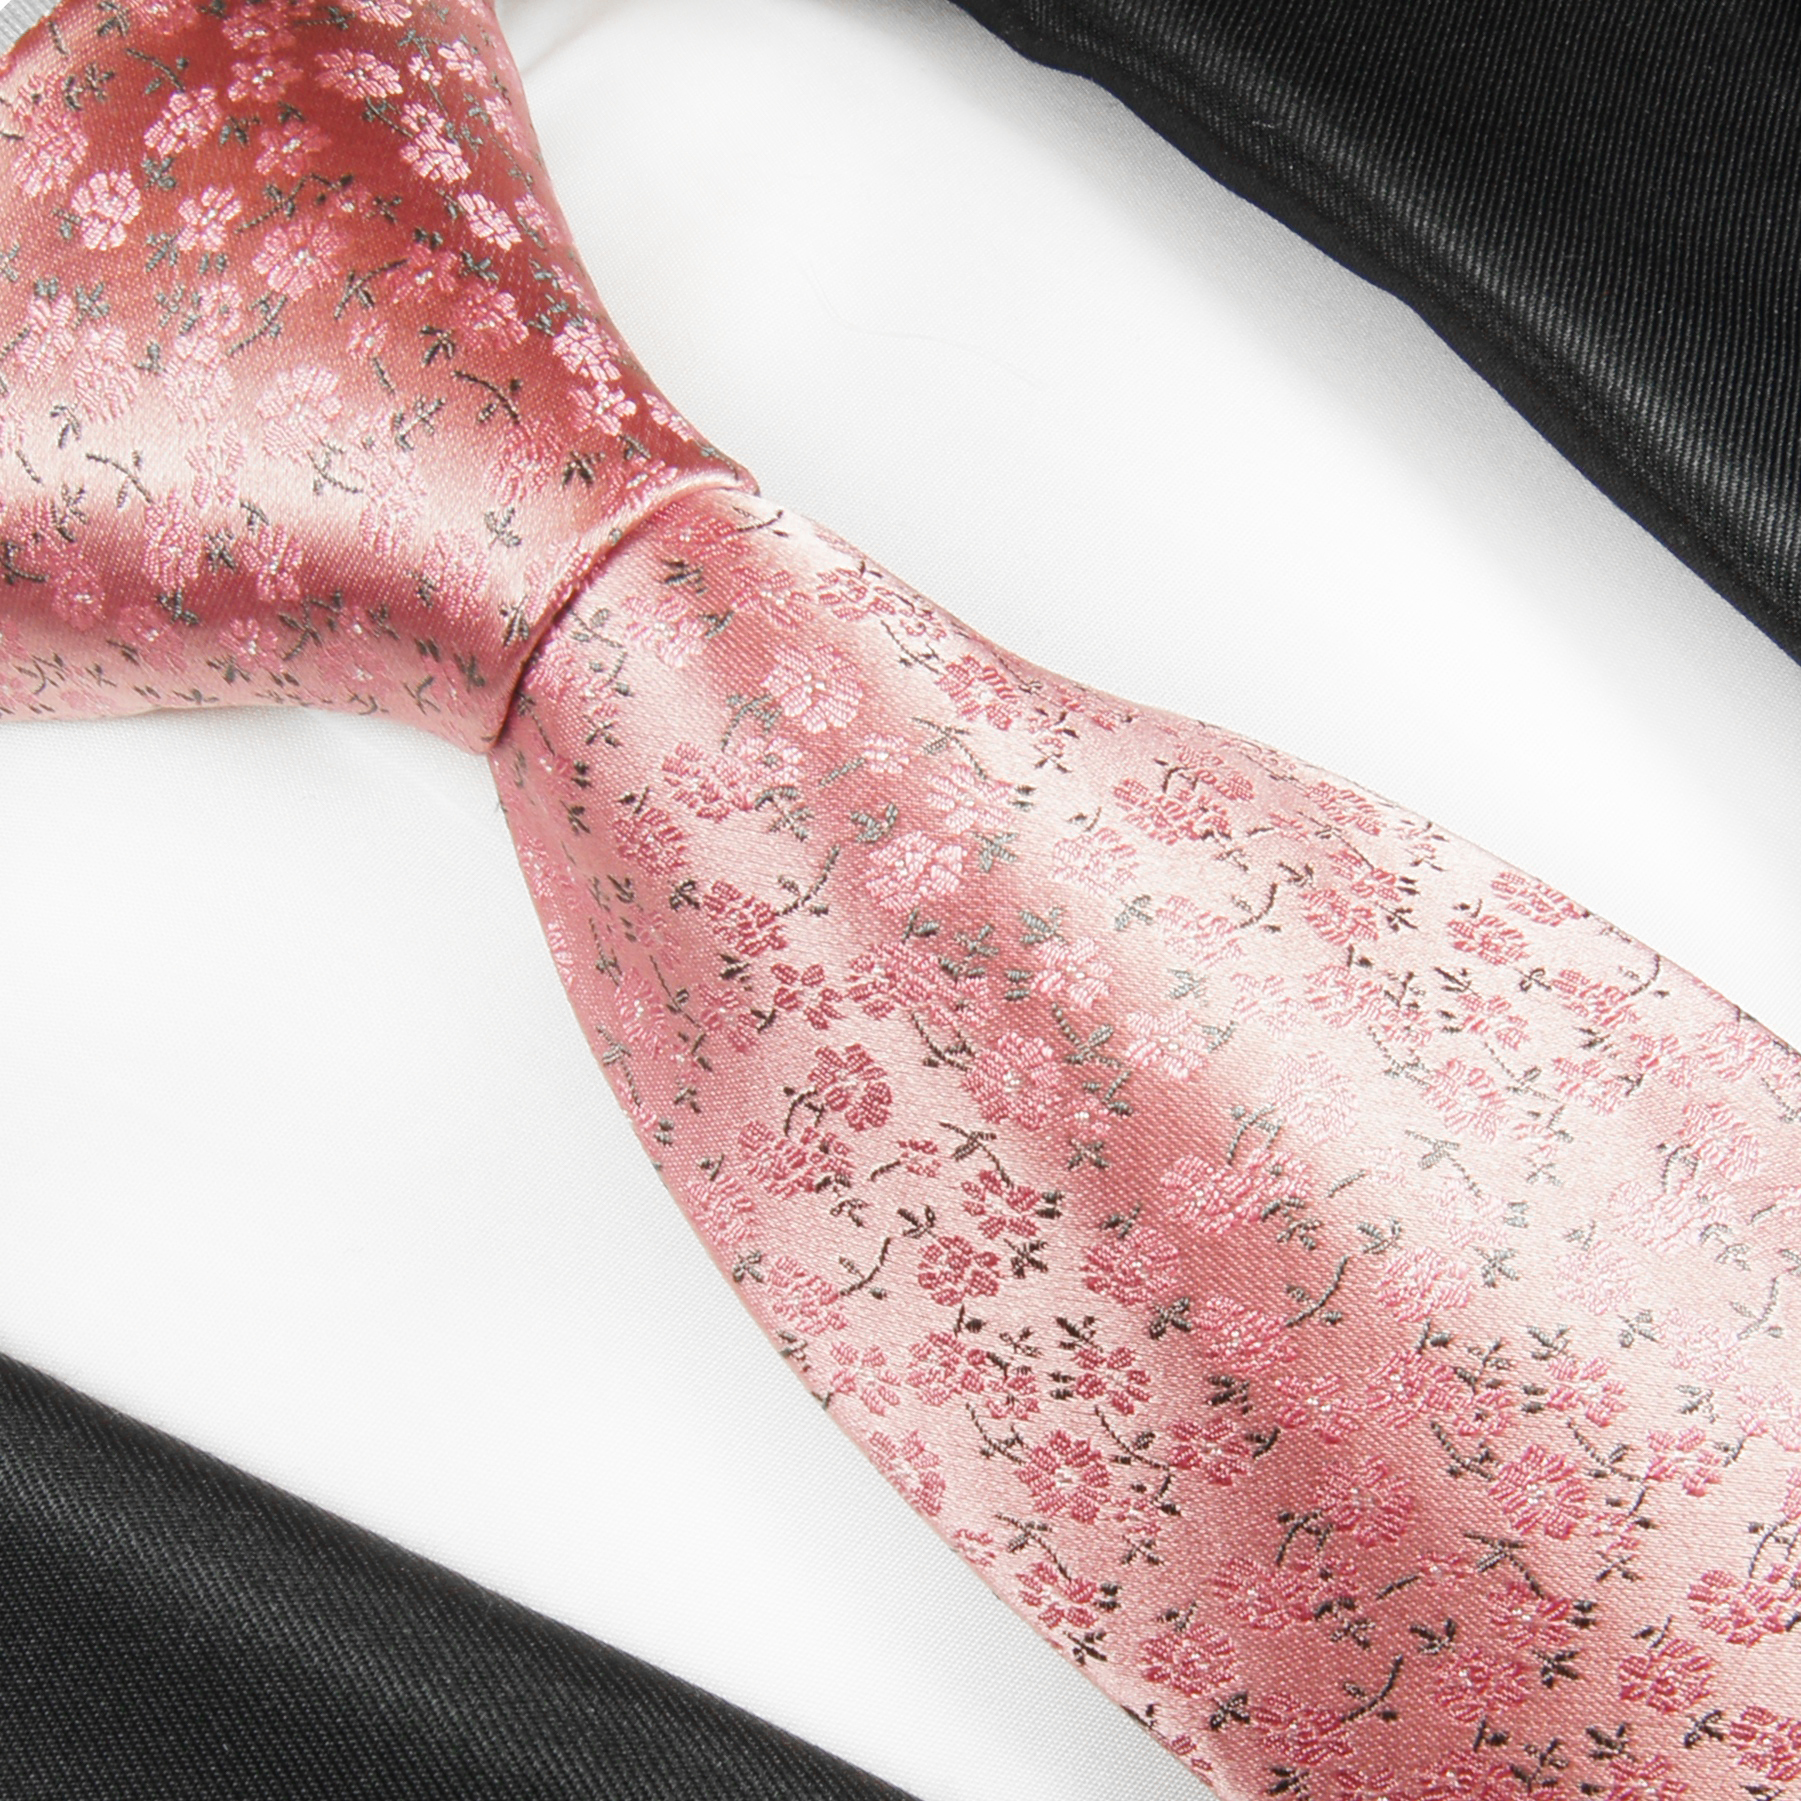 Shop - 2056 Krawatte | Blumen Malone Paul pink JETZT BESTELLEN